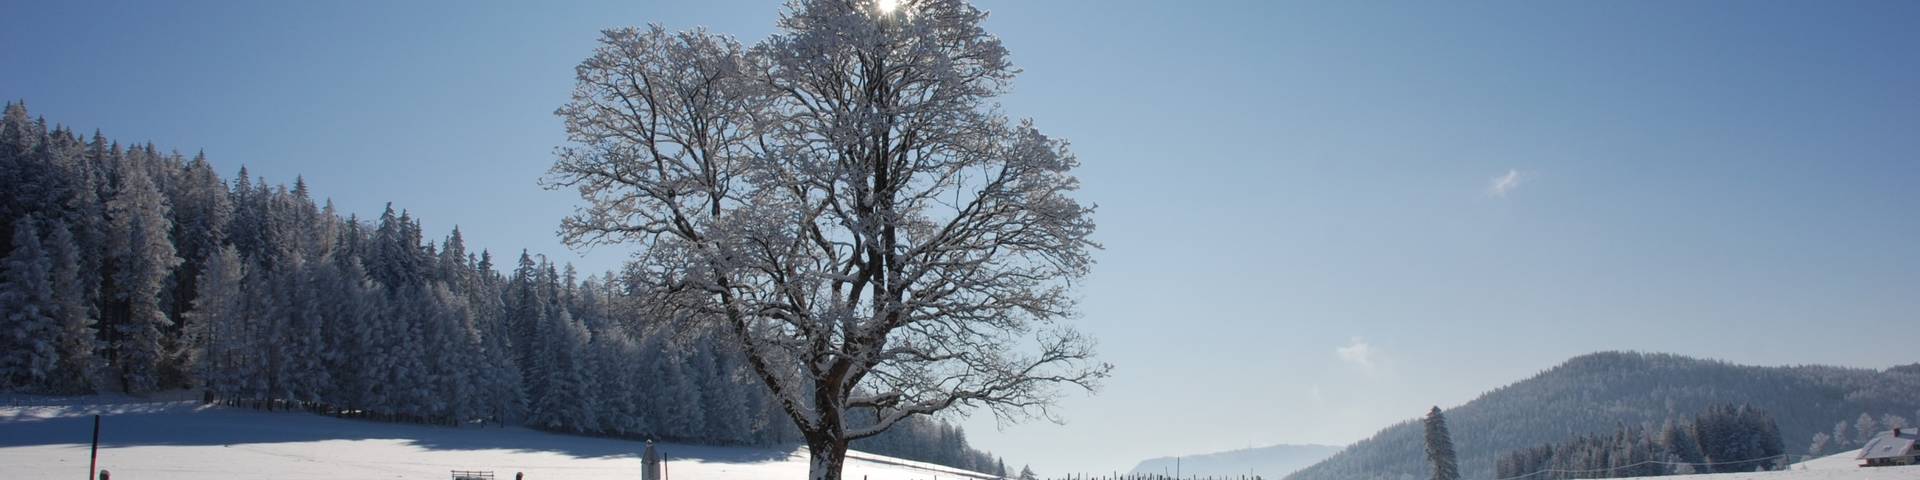 Winter_Aussicht_Teichalm